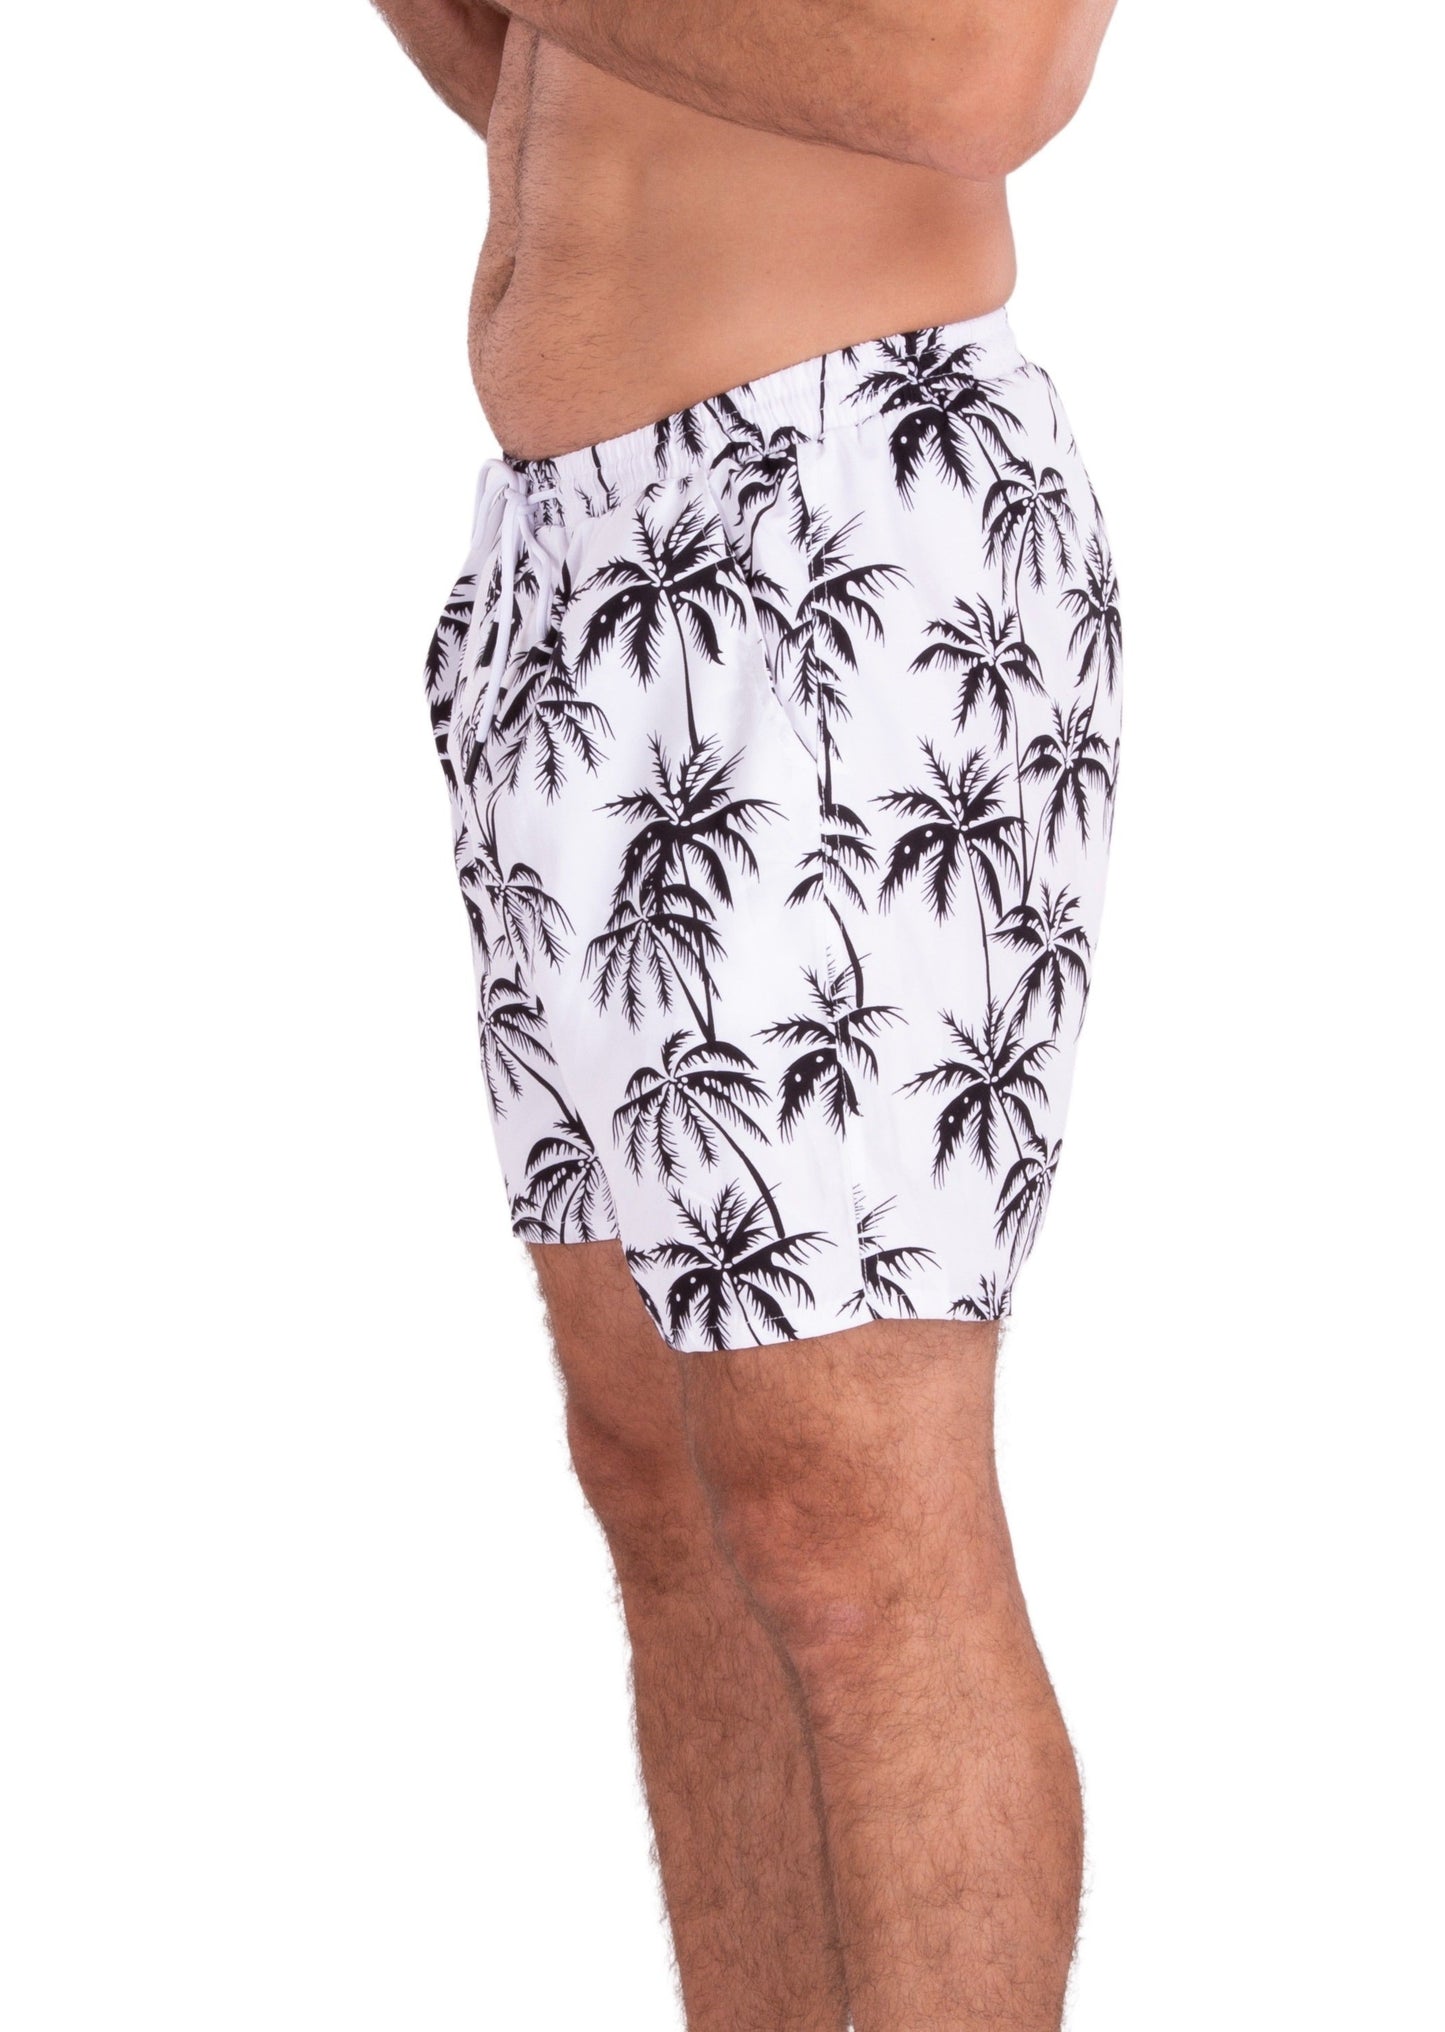 'Keep Palm' Swim Shorts